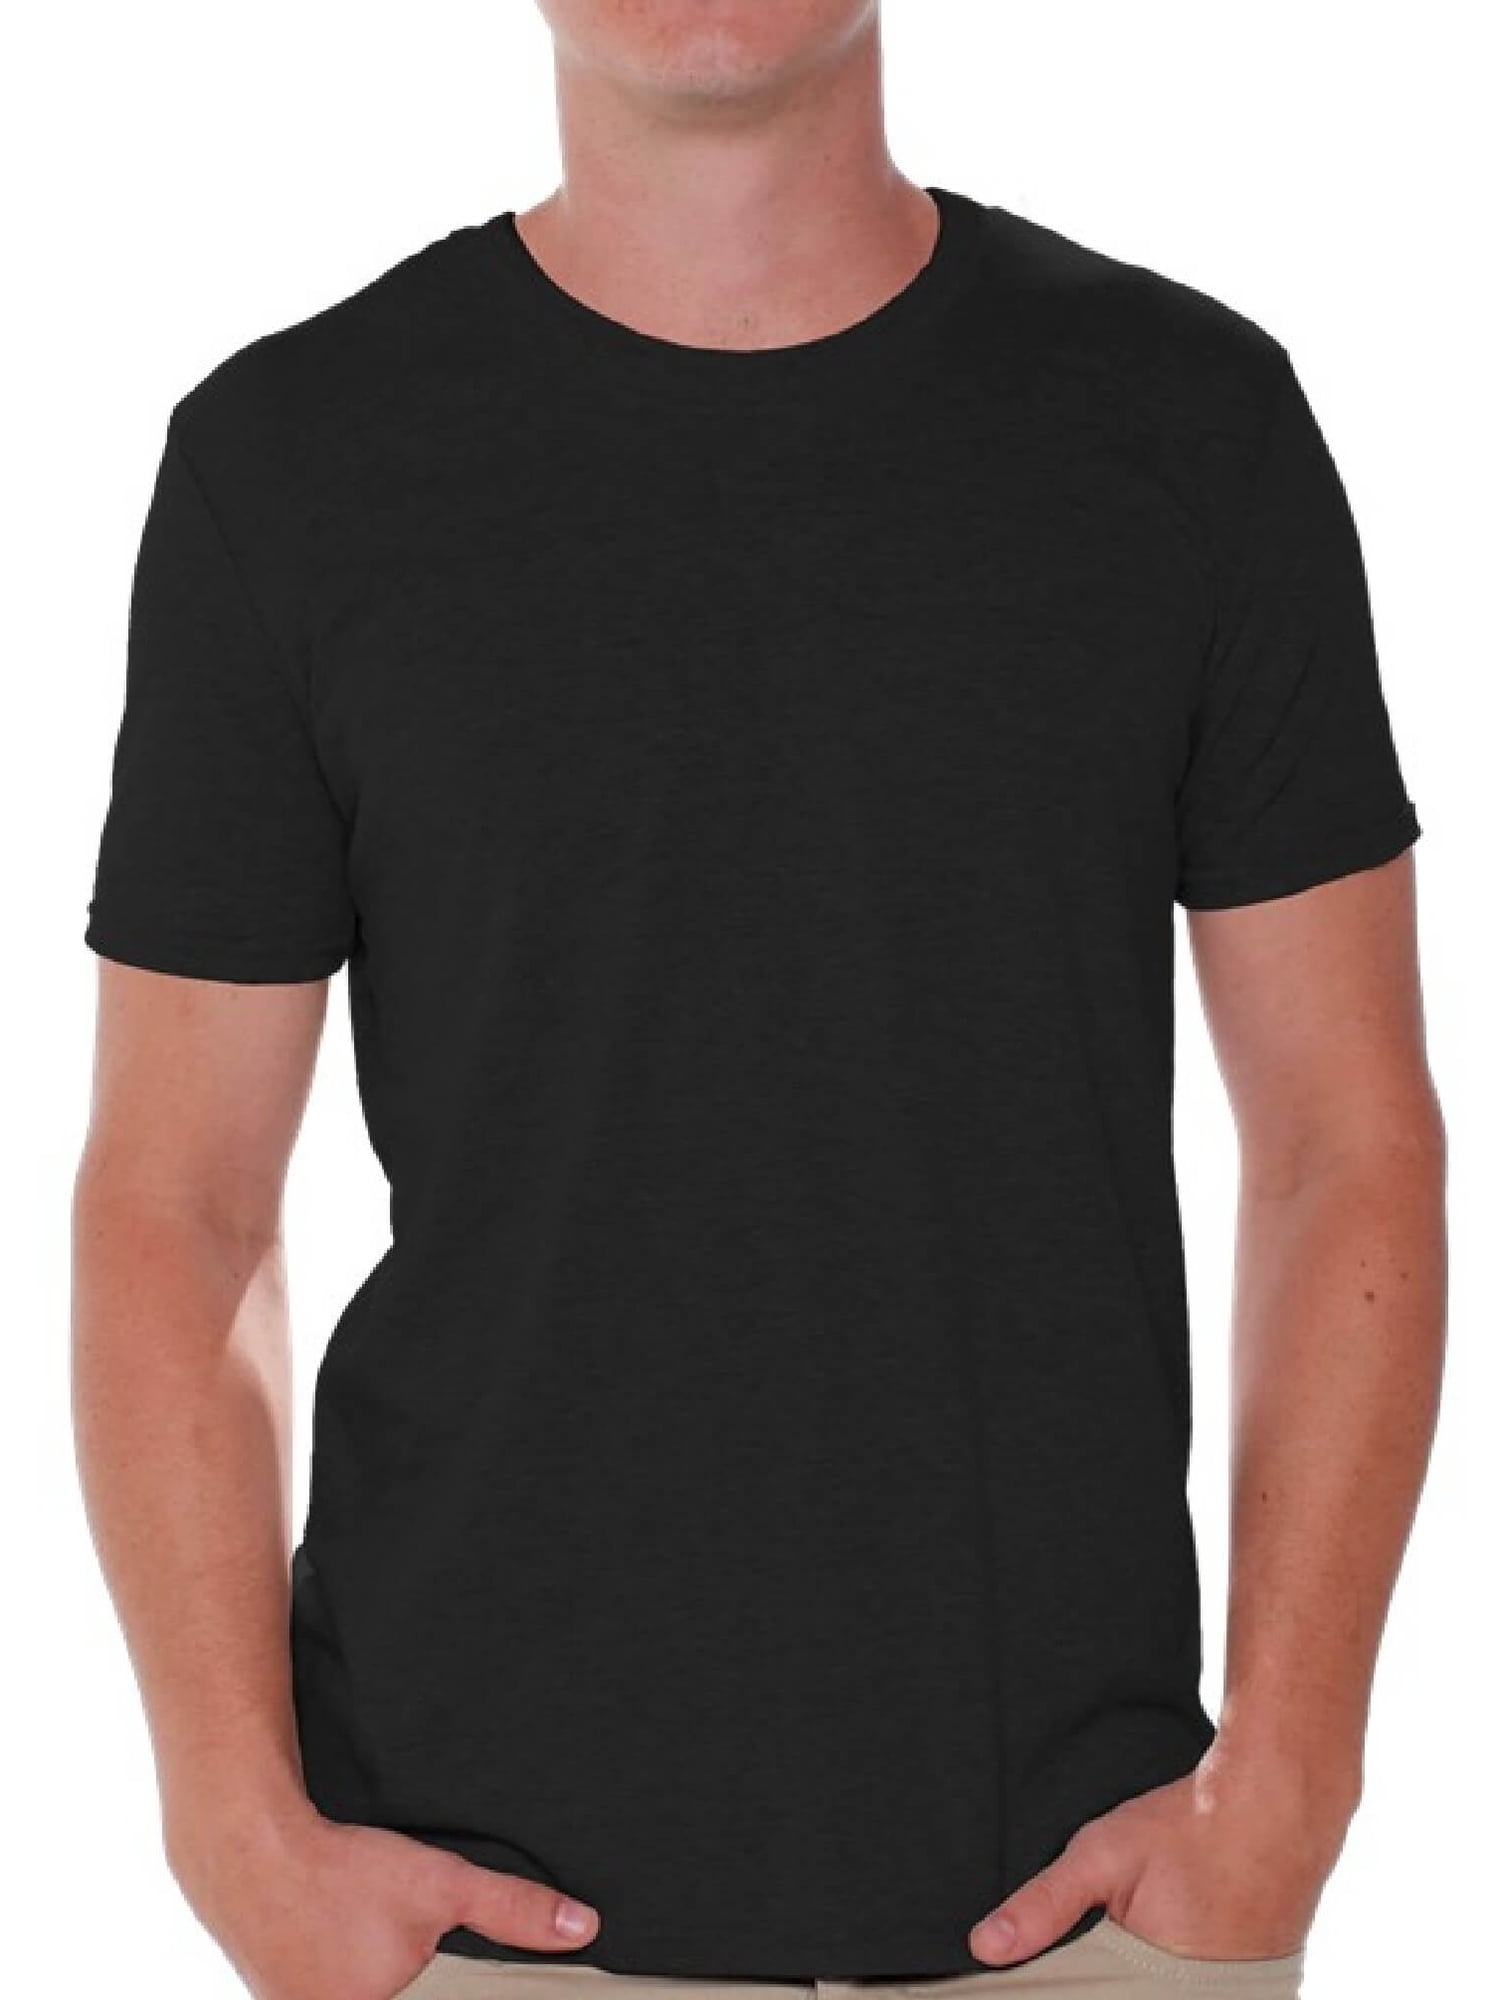 Sommer Ray Men's Black Tshirt Tees Clothing 